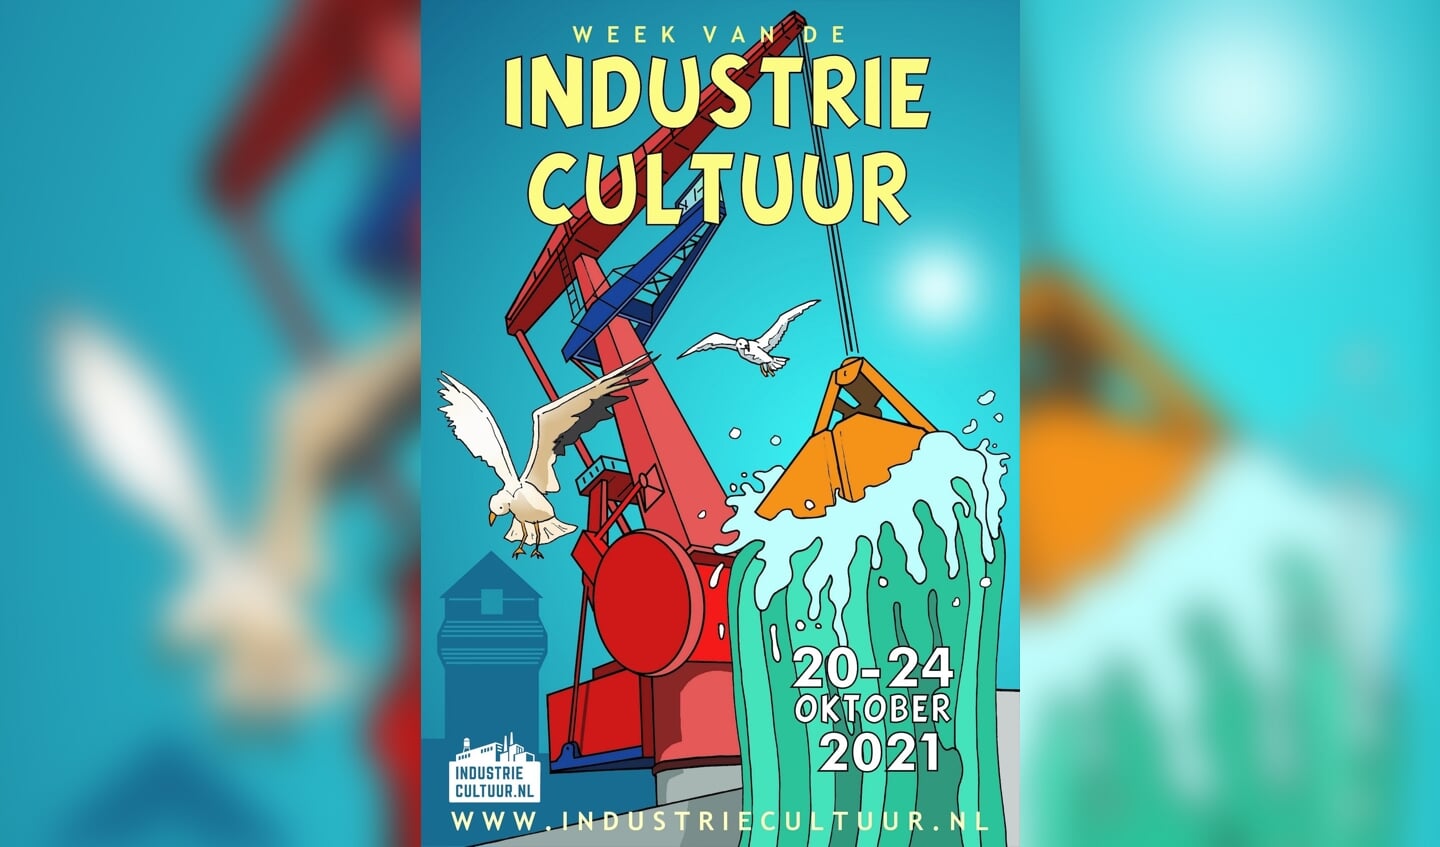  Illustrator Eric Coolen maakte deze poster voor de Week van de Industriecultuur met een heldere knipoog naar de 'klare lijn' van Kuifje tekenaar Hergé. 